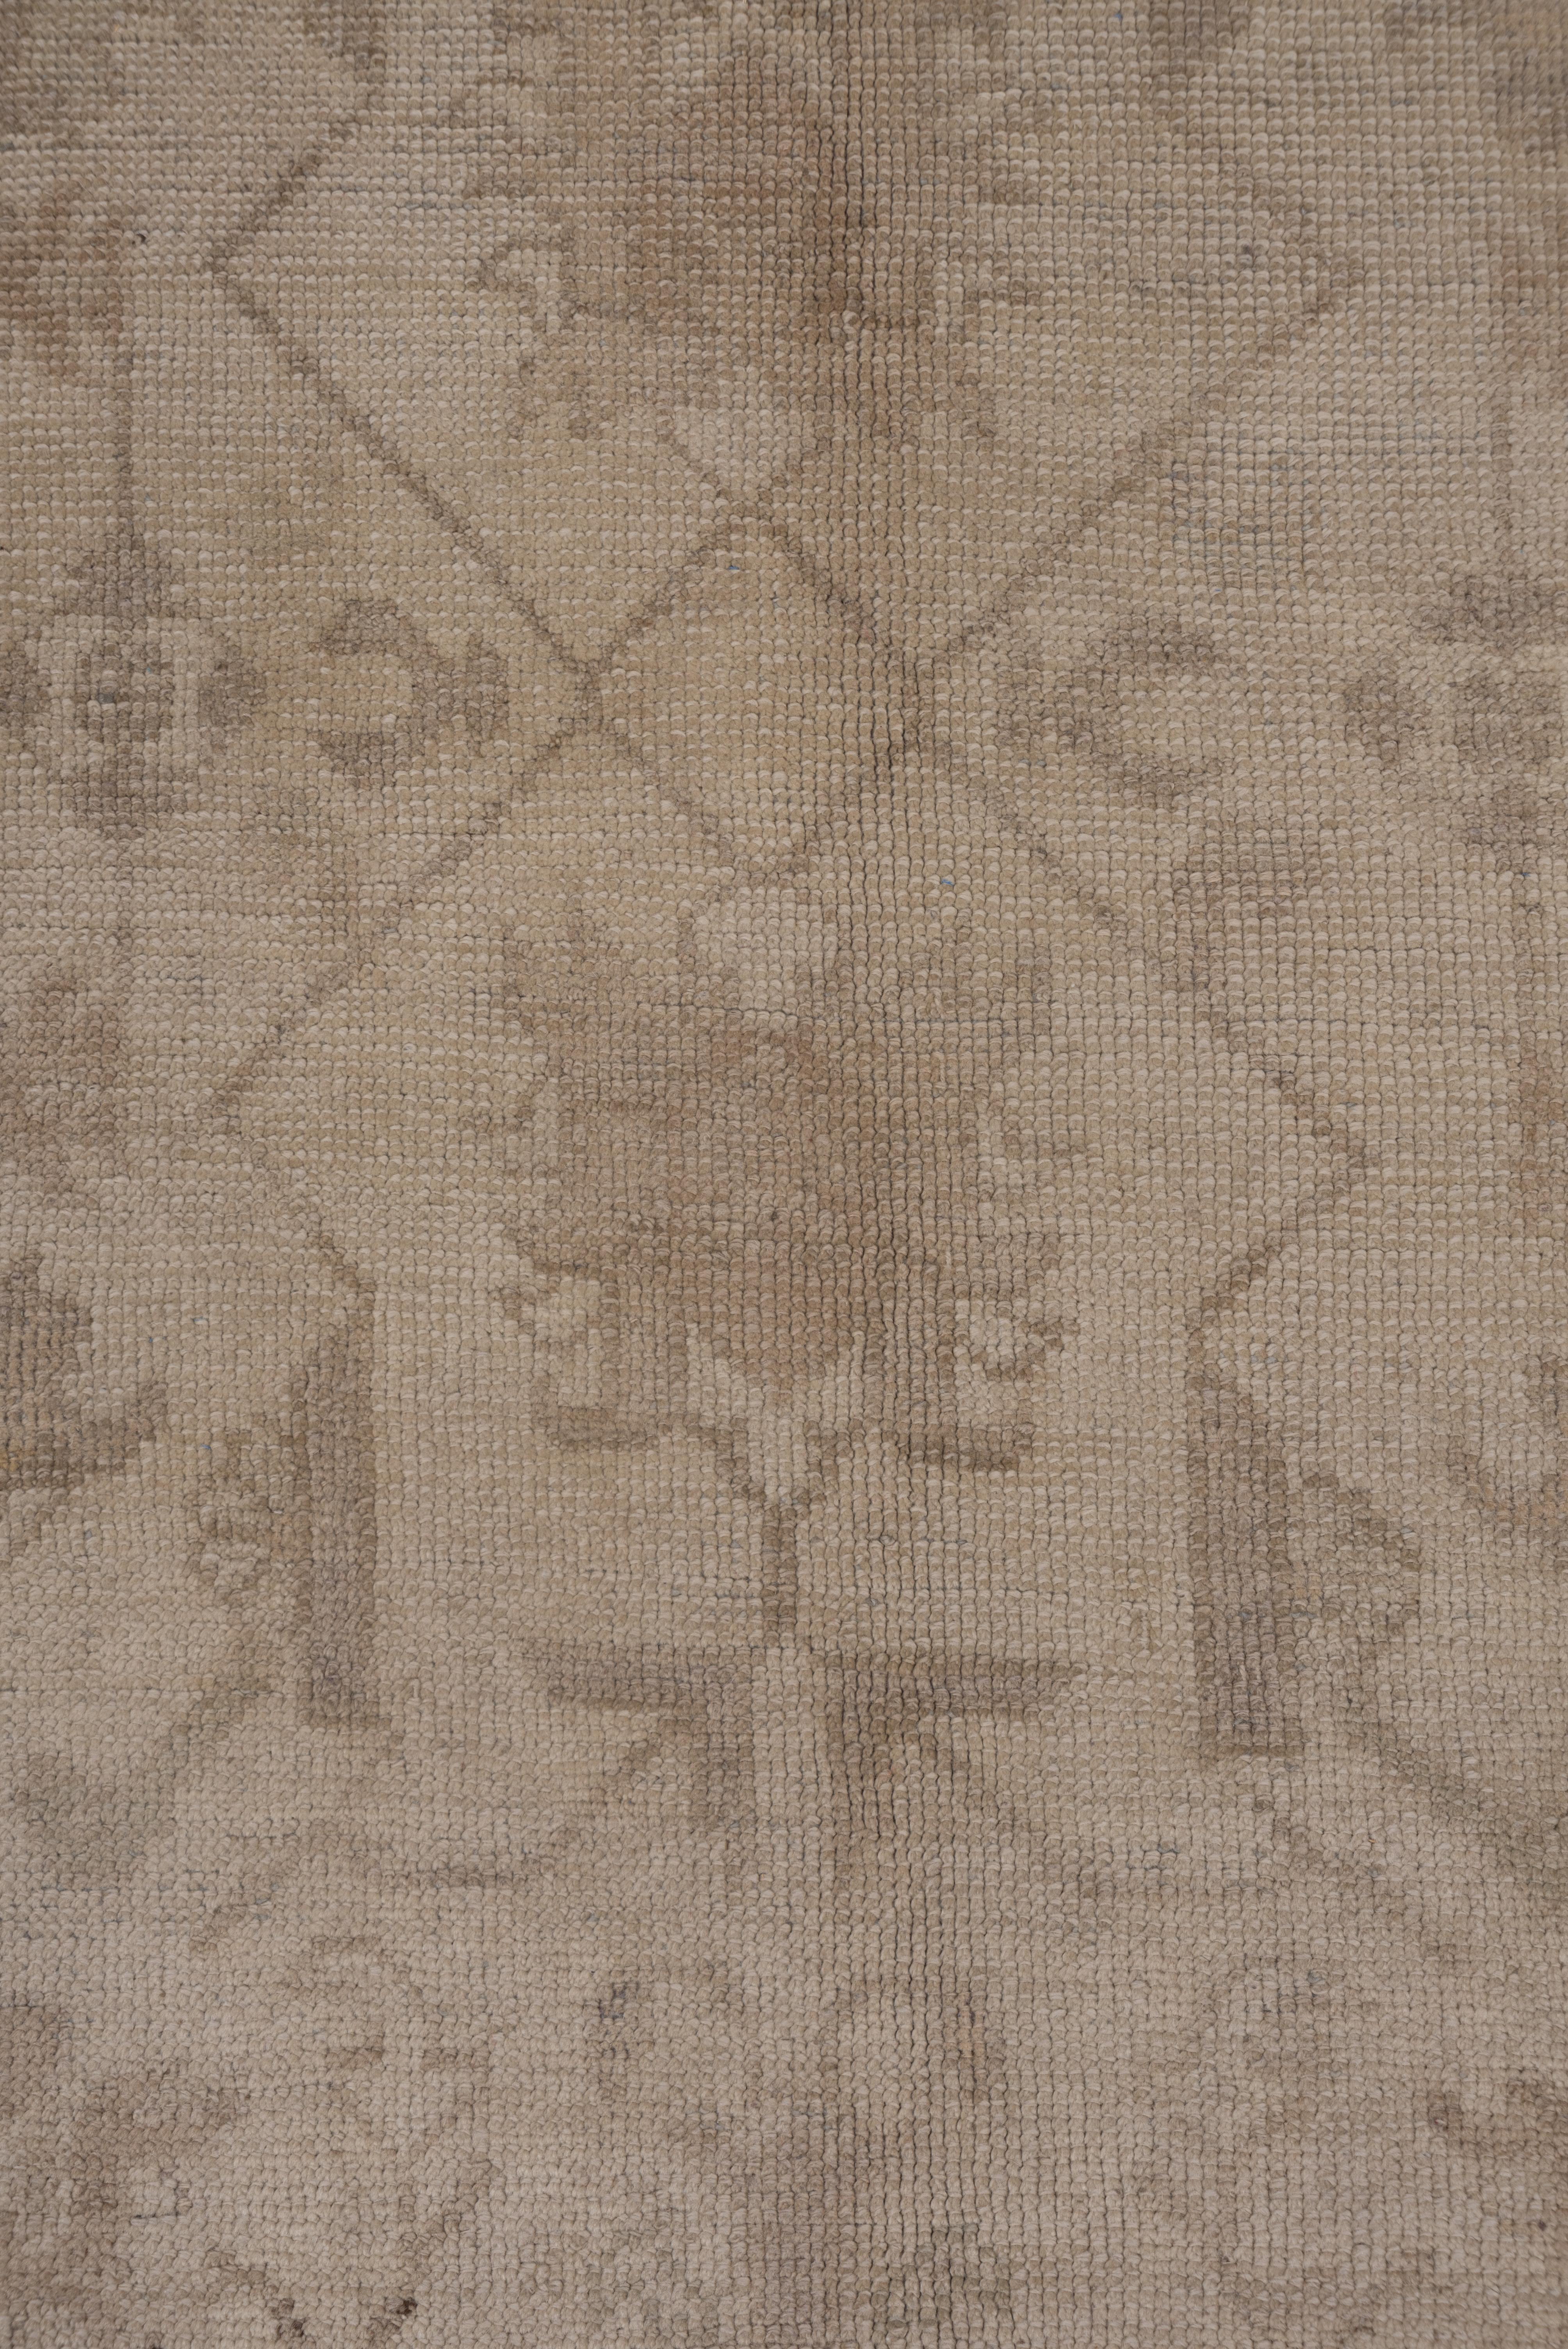 Ce tapis long turc occidental de couleur sable présente un motif de fleurs géométriques et de lianes droites et angulaires de couleur brun clair, entouré de bordures transylvaniennes de style sable du XVIIe siècle, composées de cartouches de couleur